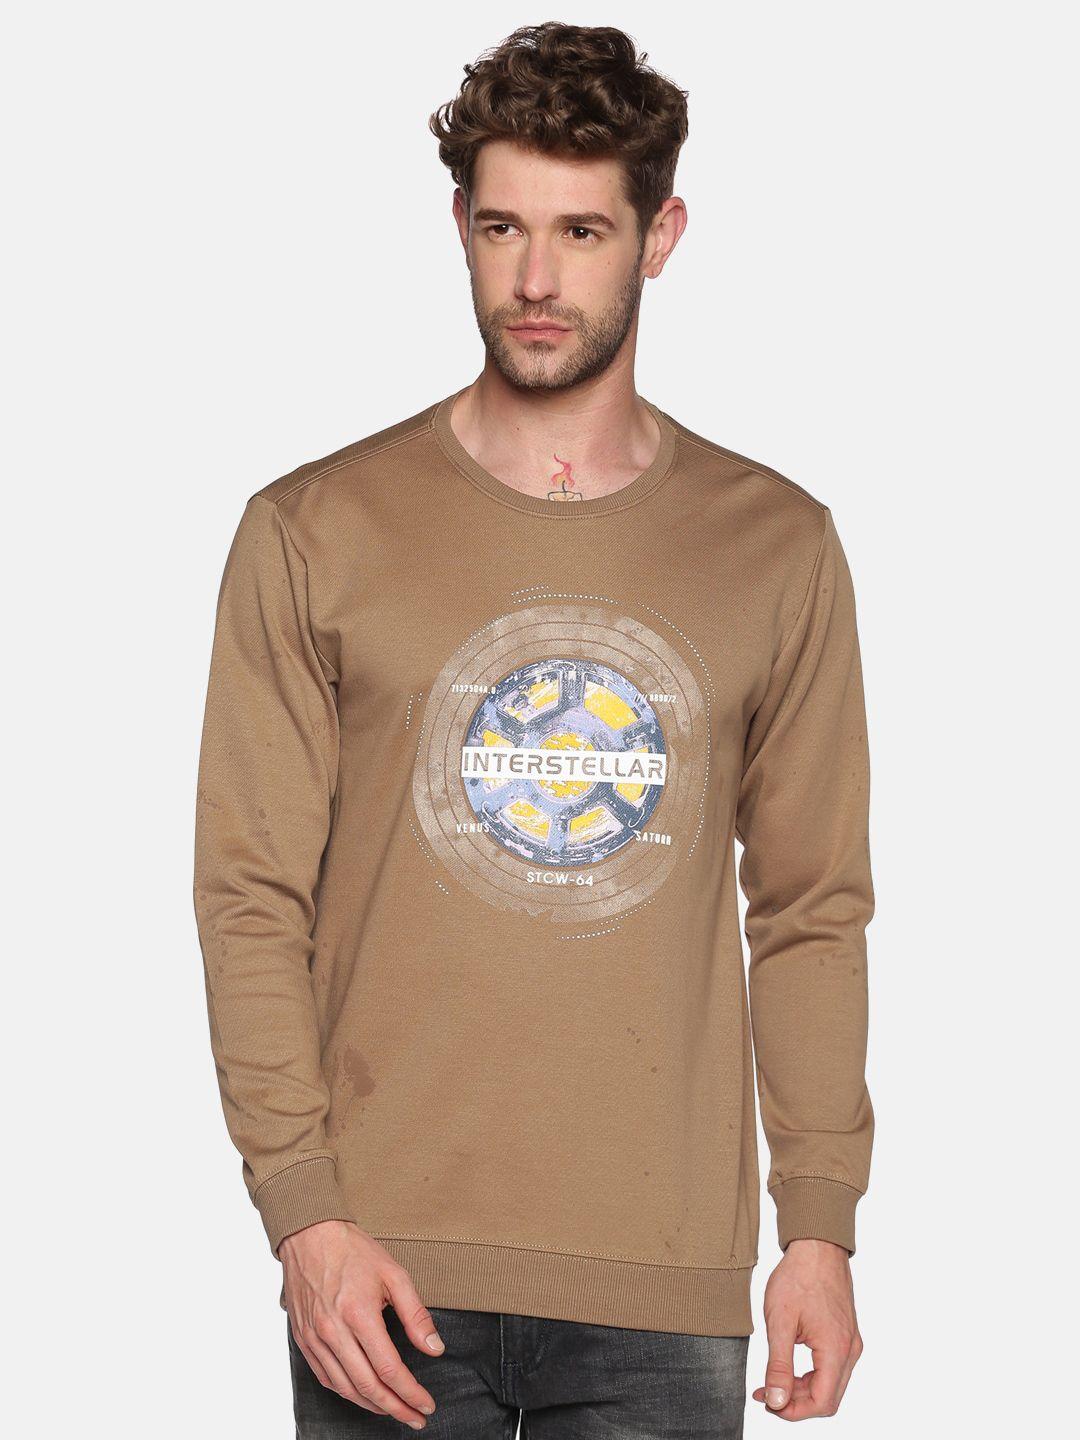 showoff-men-beige-printed-sweatshirt